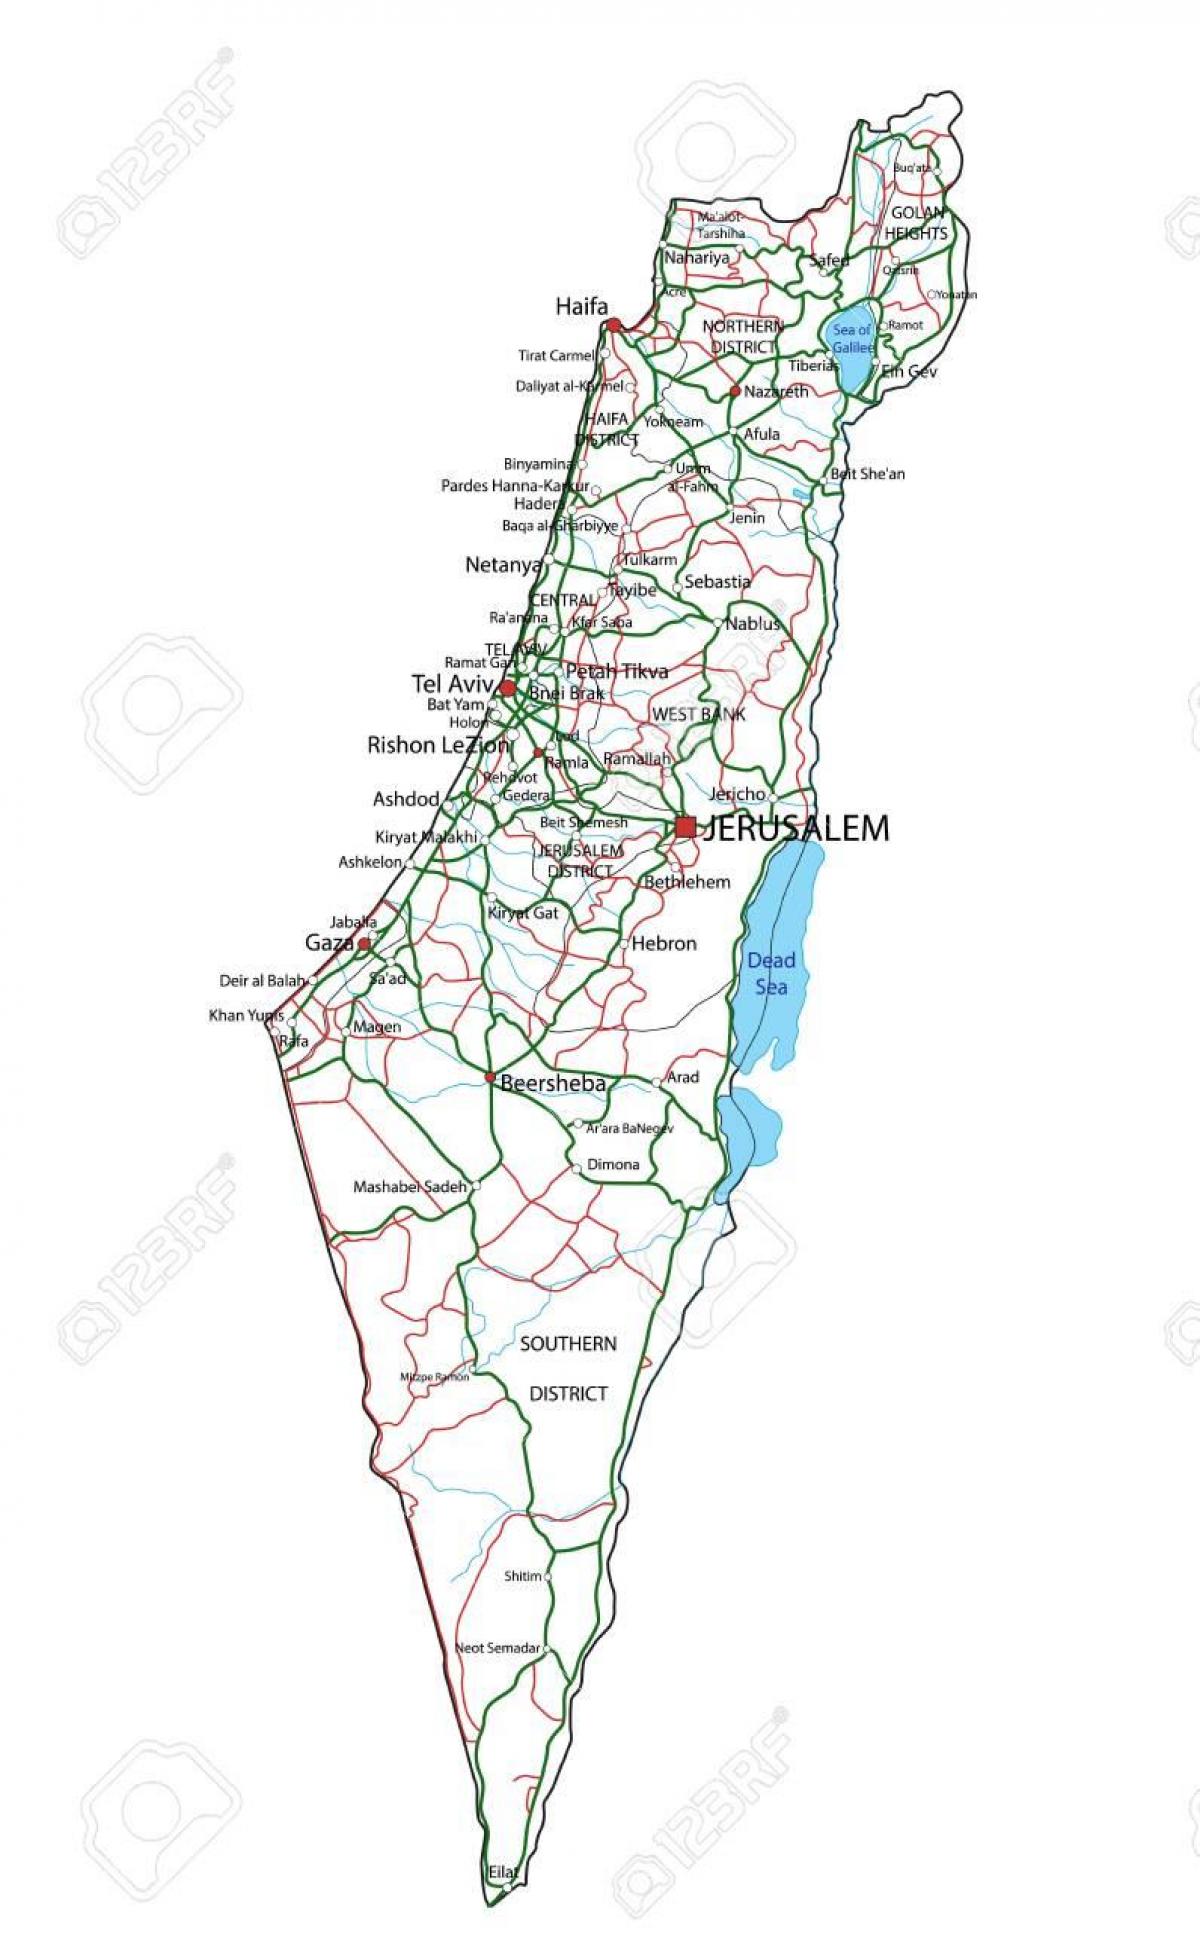 Autobahnkarte von Israel